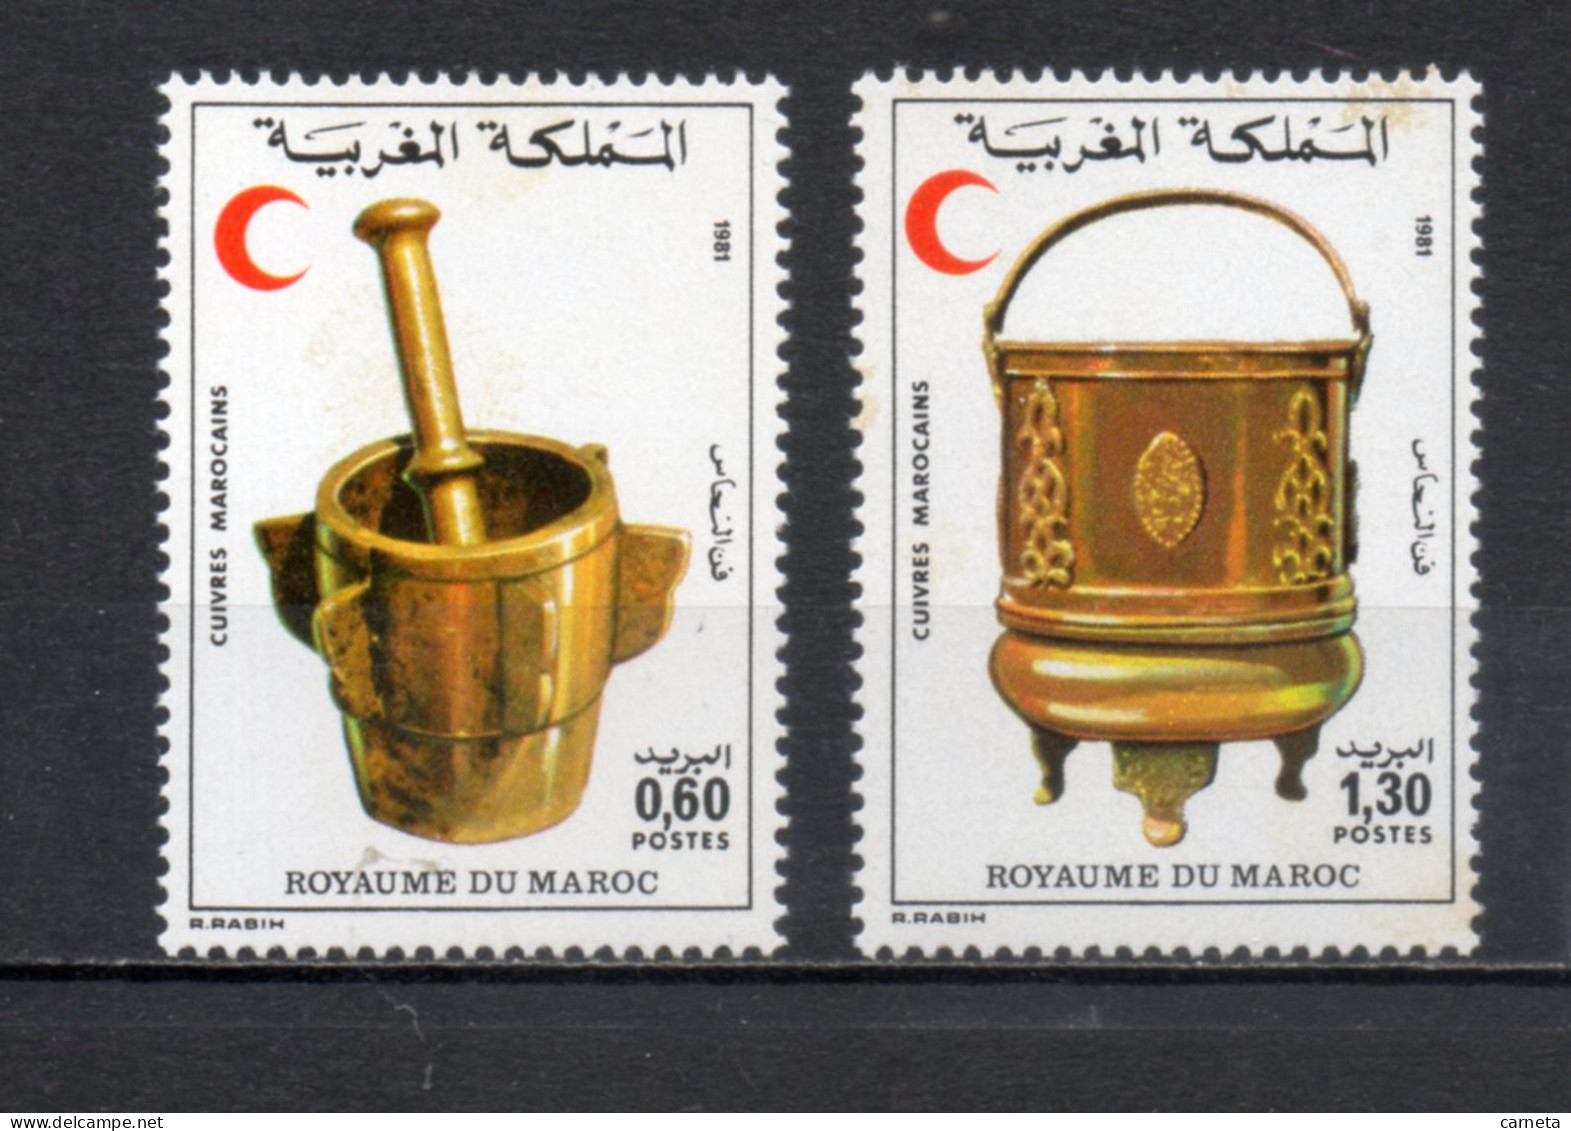 MAROC N°  891 + 892    NEUFS SANS CHARNIERE  COTE 2.00€    CROISSANT ROUGE  VOIR DESCRIPTION - Morocco (1956-...)